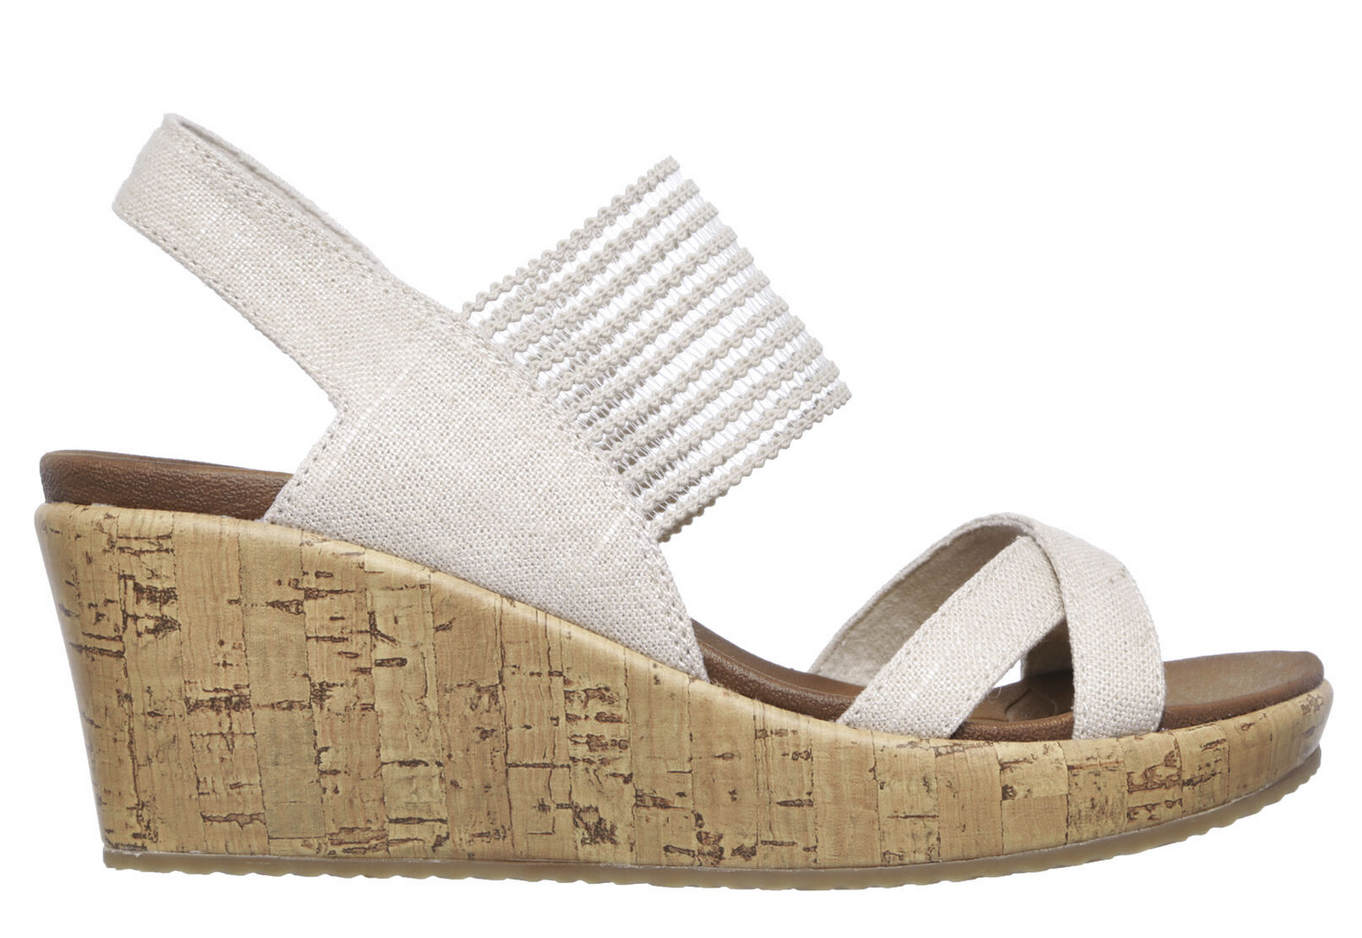 Son cómodas, quedan genial con vaqueros y baratas: las sandalias de Skechers que necesitas en tu vida